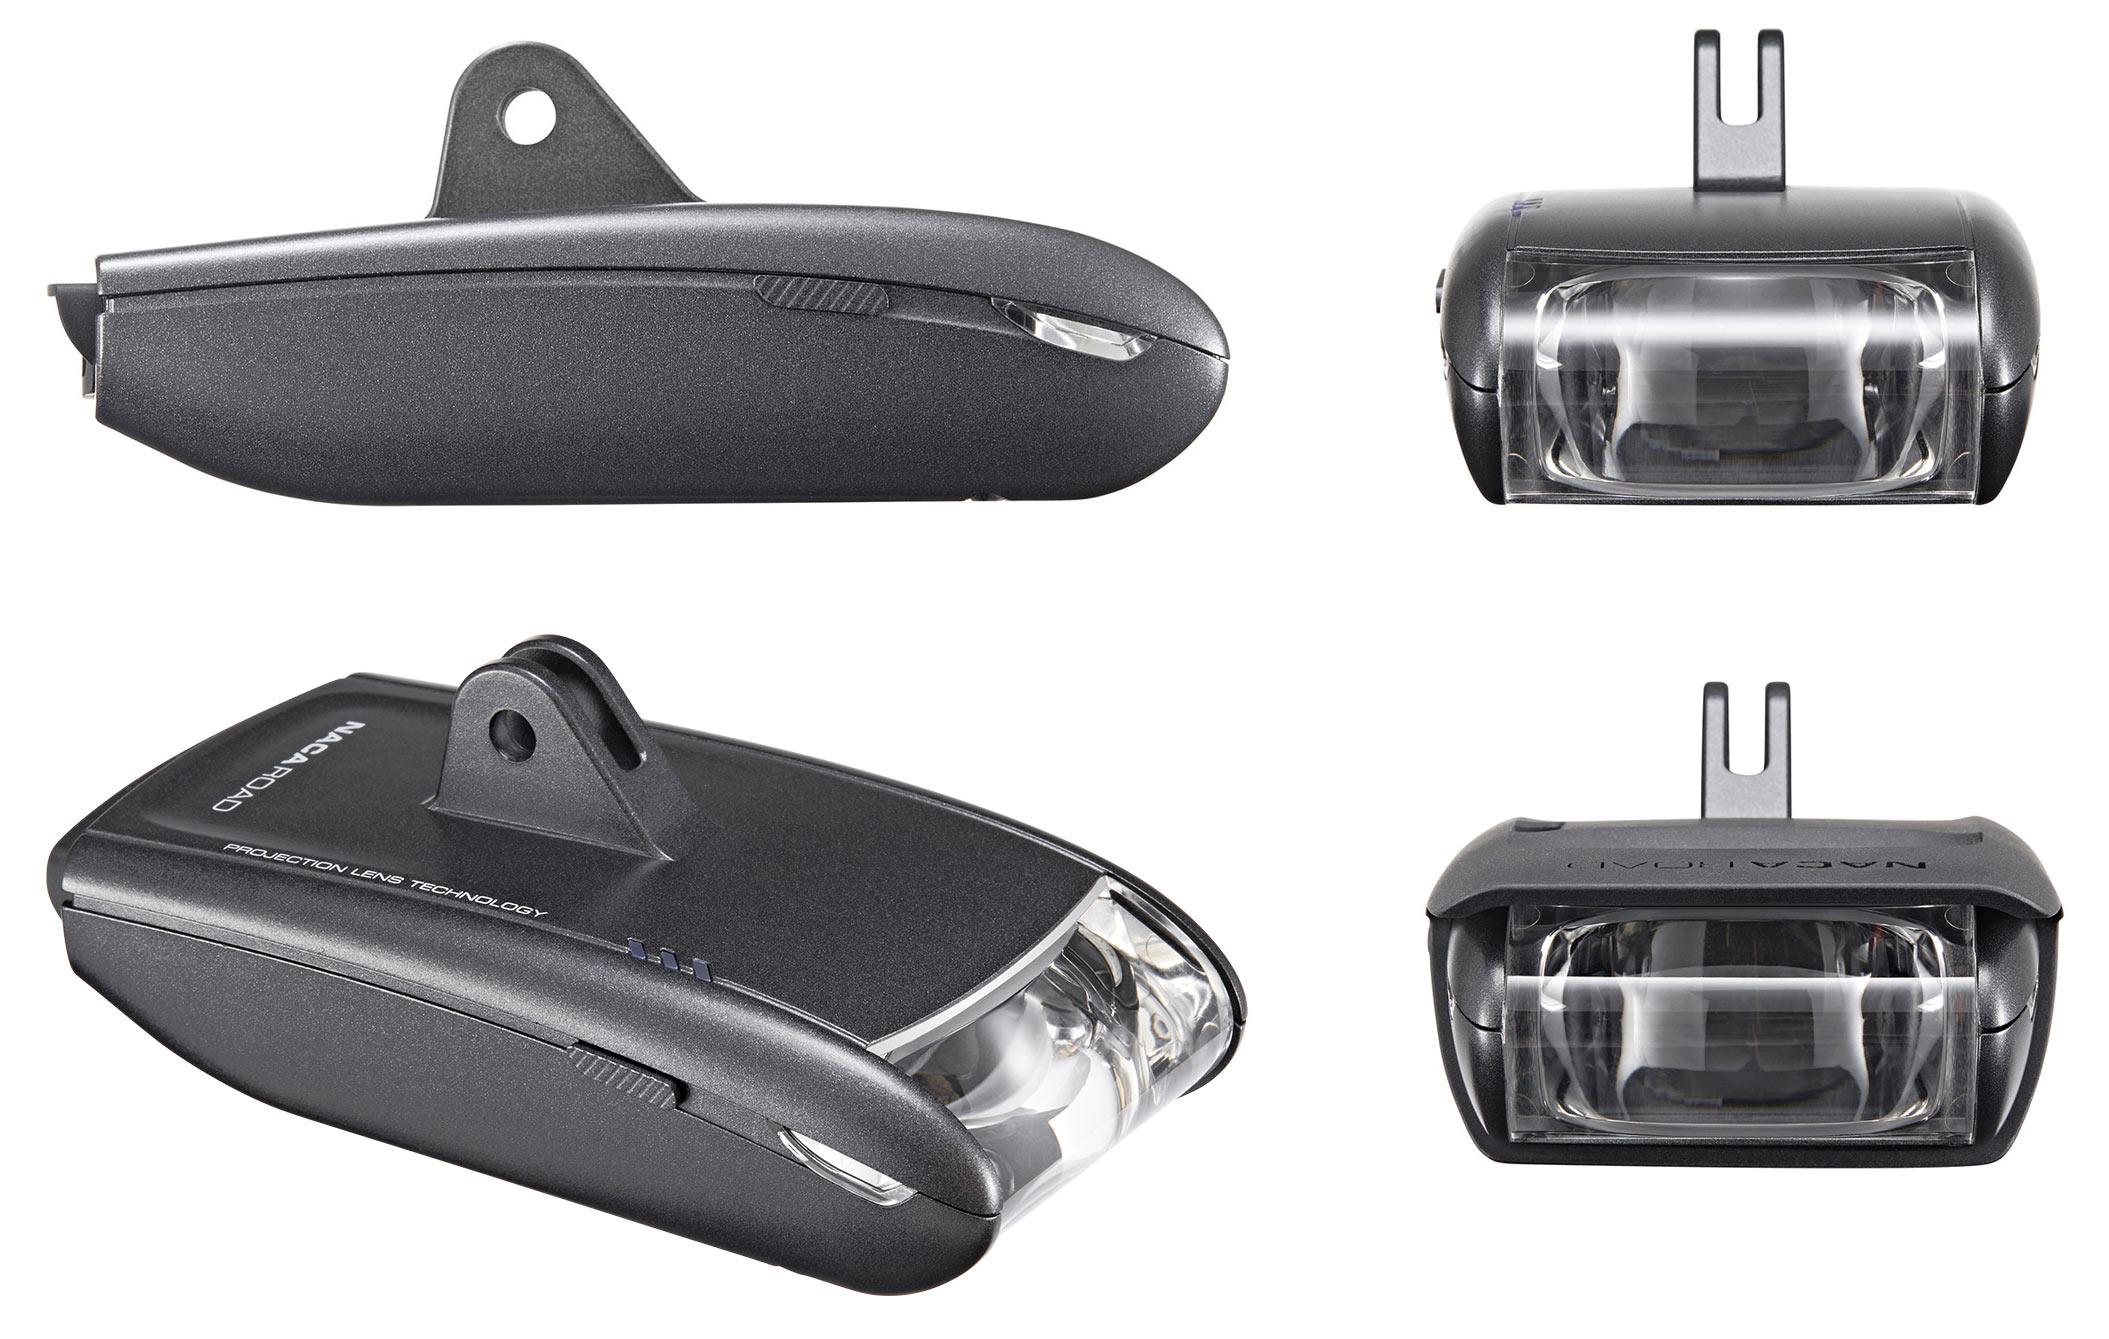 從各個角度顯示的 lightskin naca road aero profile 自行車前燈